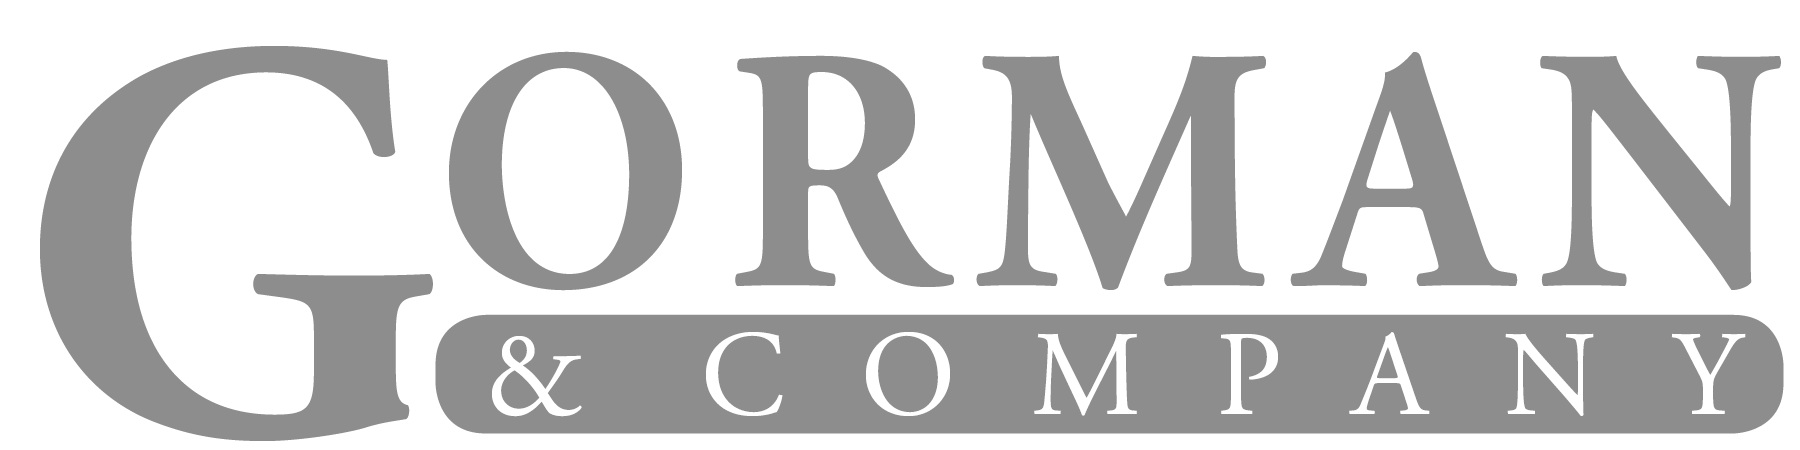 Gorman & Company.png